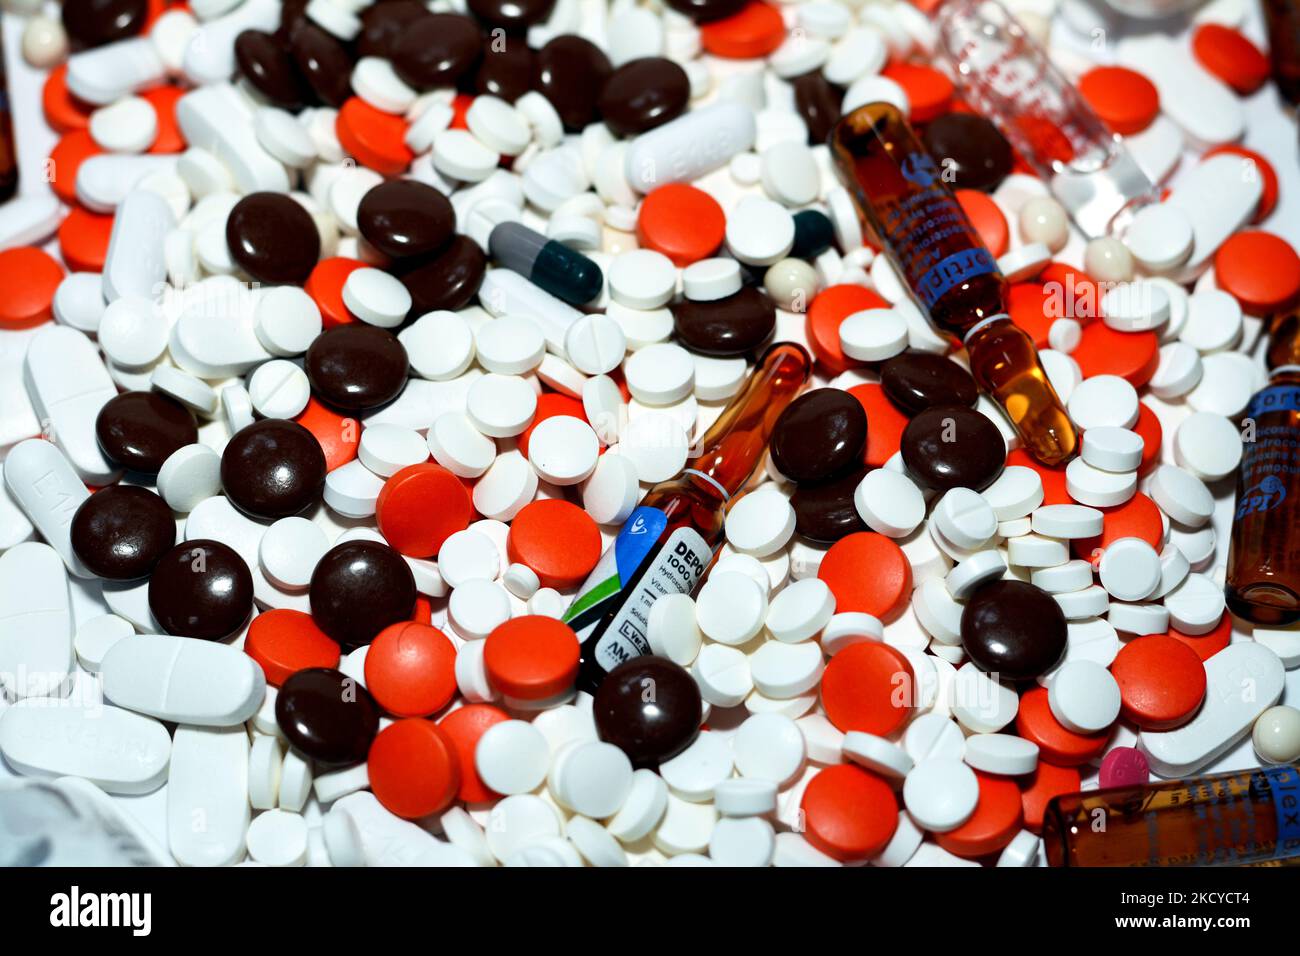 Le Caire, Egypte, 29 octobre 2022: Pile de différents comprimés médicaux, pilules, capsules et ampoules qui ont utilisé pour traiter diverses maladies et conditions, stac Banque D'Images